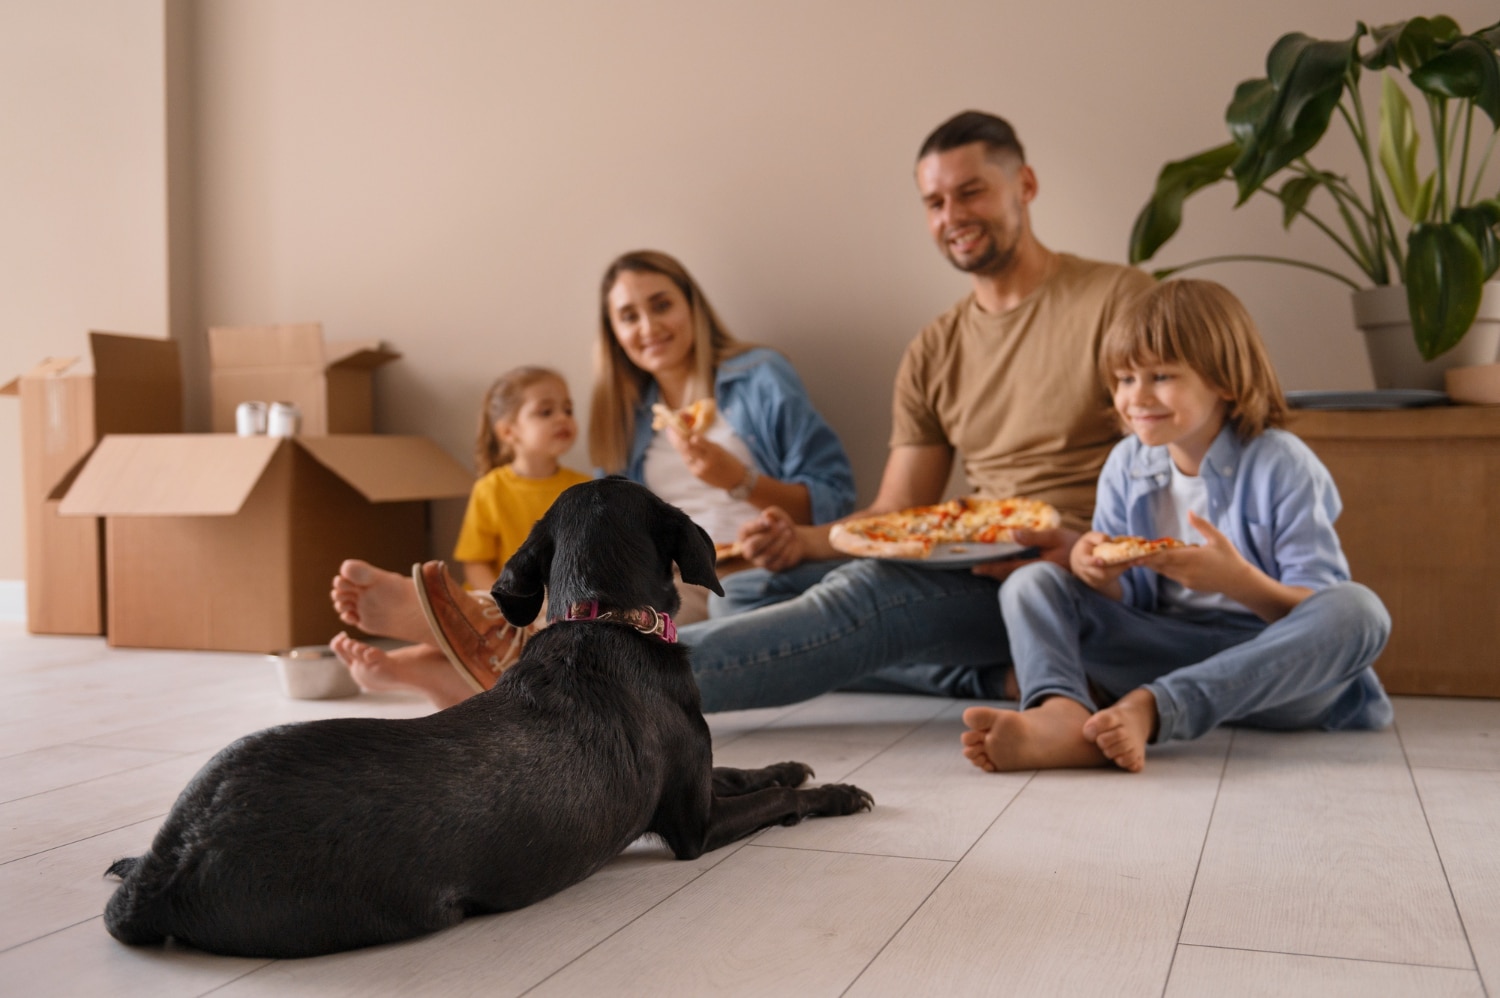 Este artículo proporciona una guía detallada para familias que se mudan con niños o mascotas, enfocándose en cómo preparar, organizar, y adaptar a todos los miembros de la familia para una transición segura y tranquila.